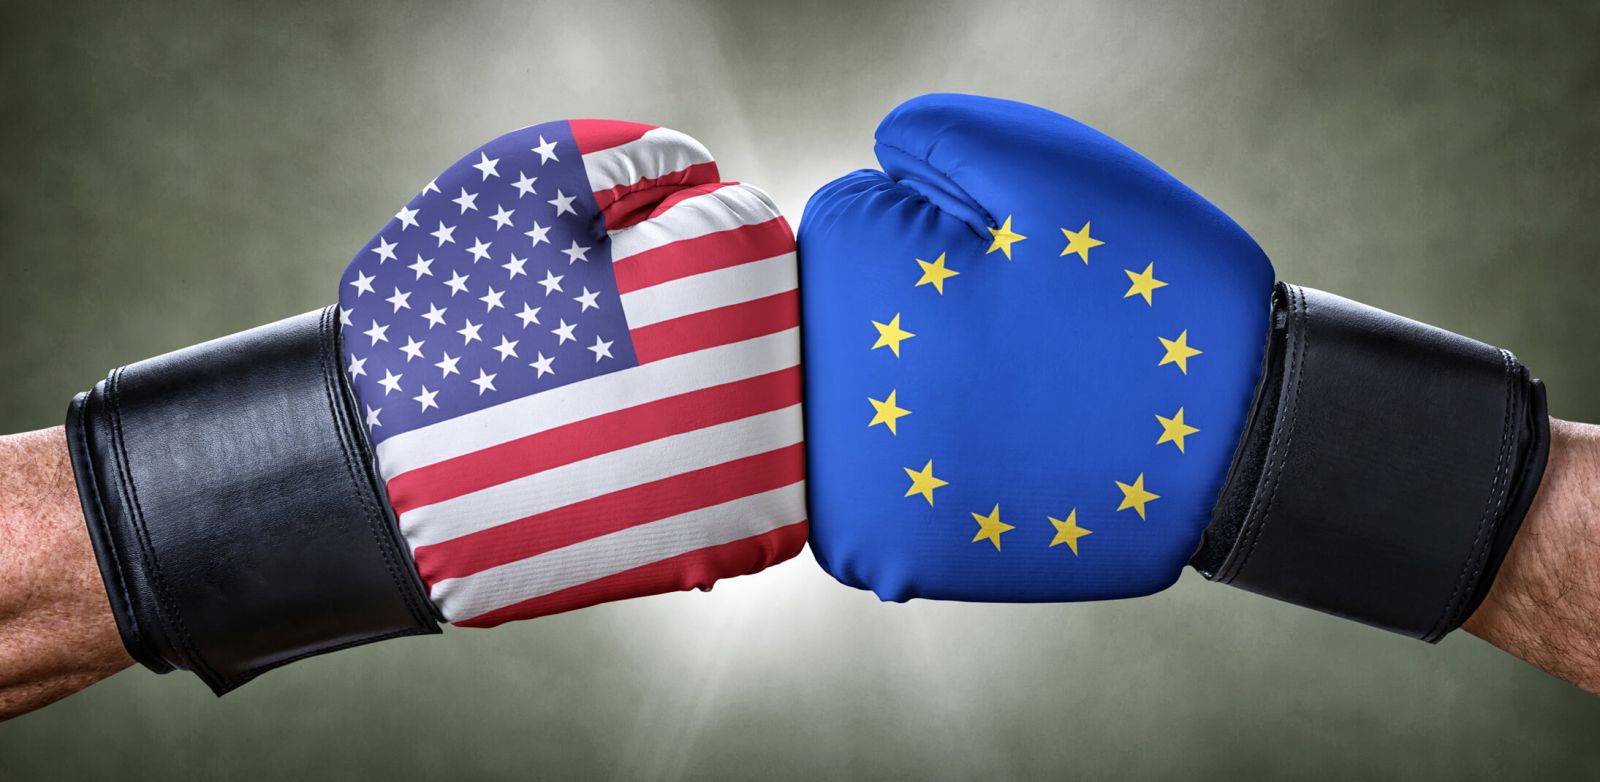 Guerra comercial EE.UU. y la Unión Europea, generará aumento de precio de productos